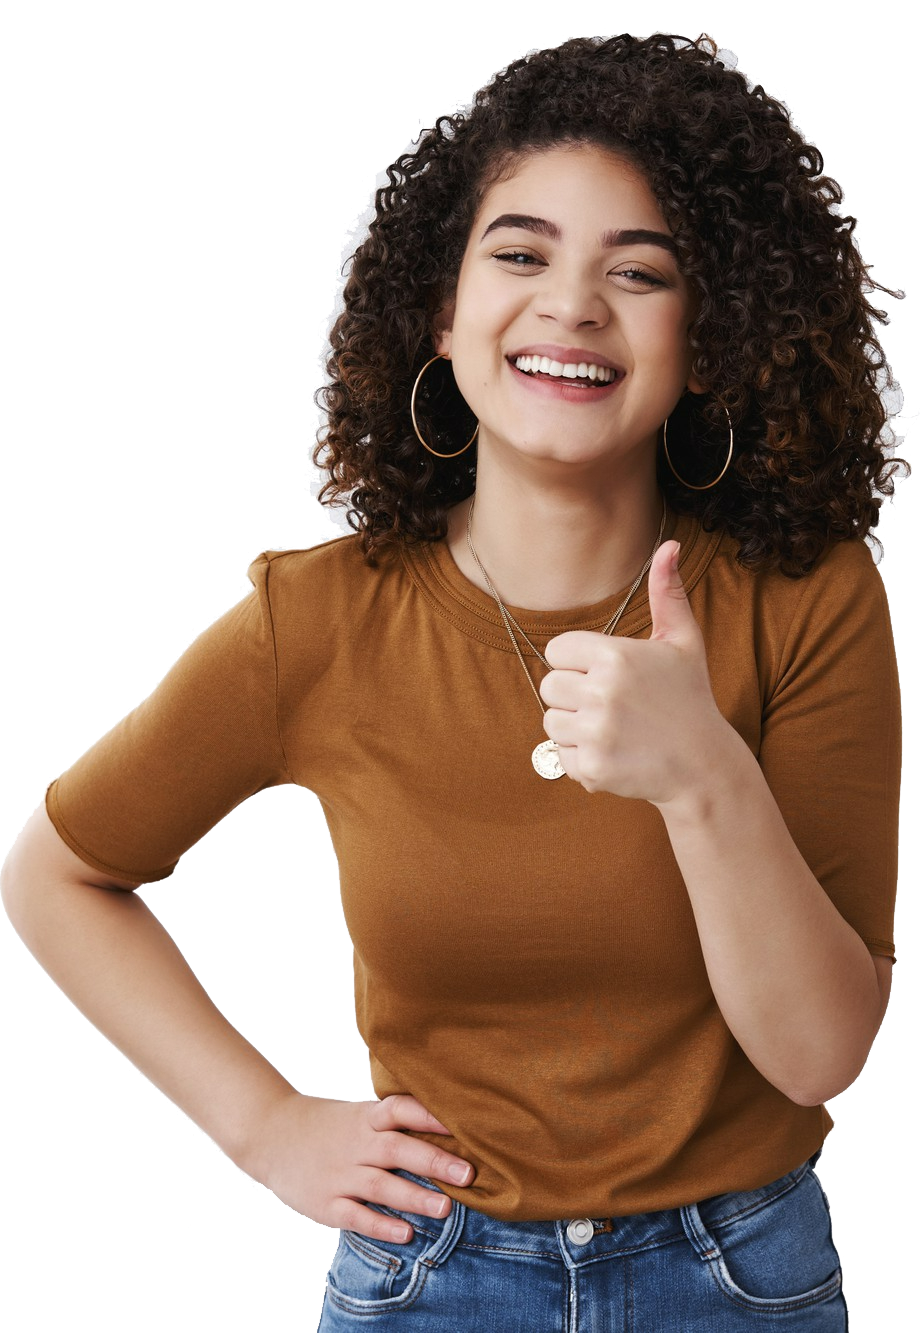 Nesta imagem vemos uma jovem mulher negra, vestindo uma calça jeans e uma blusa marrom. Ela está sorrindo e fazendo um sinal de "jóia" com a mão esquerda.